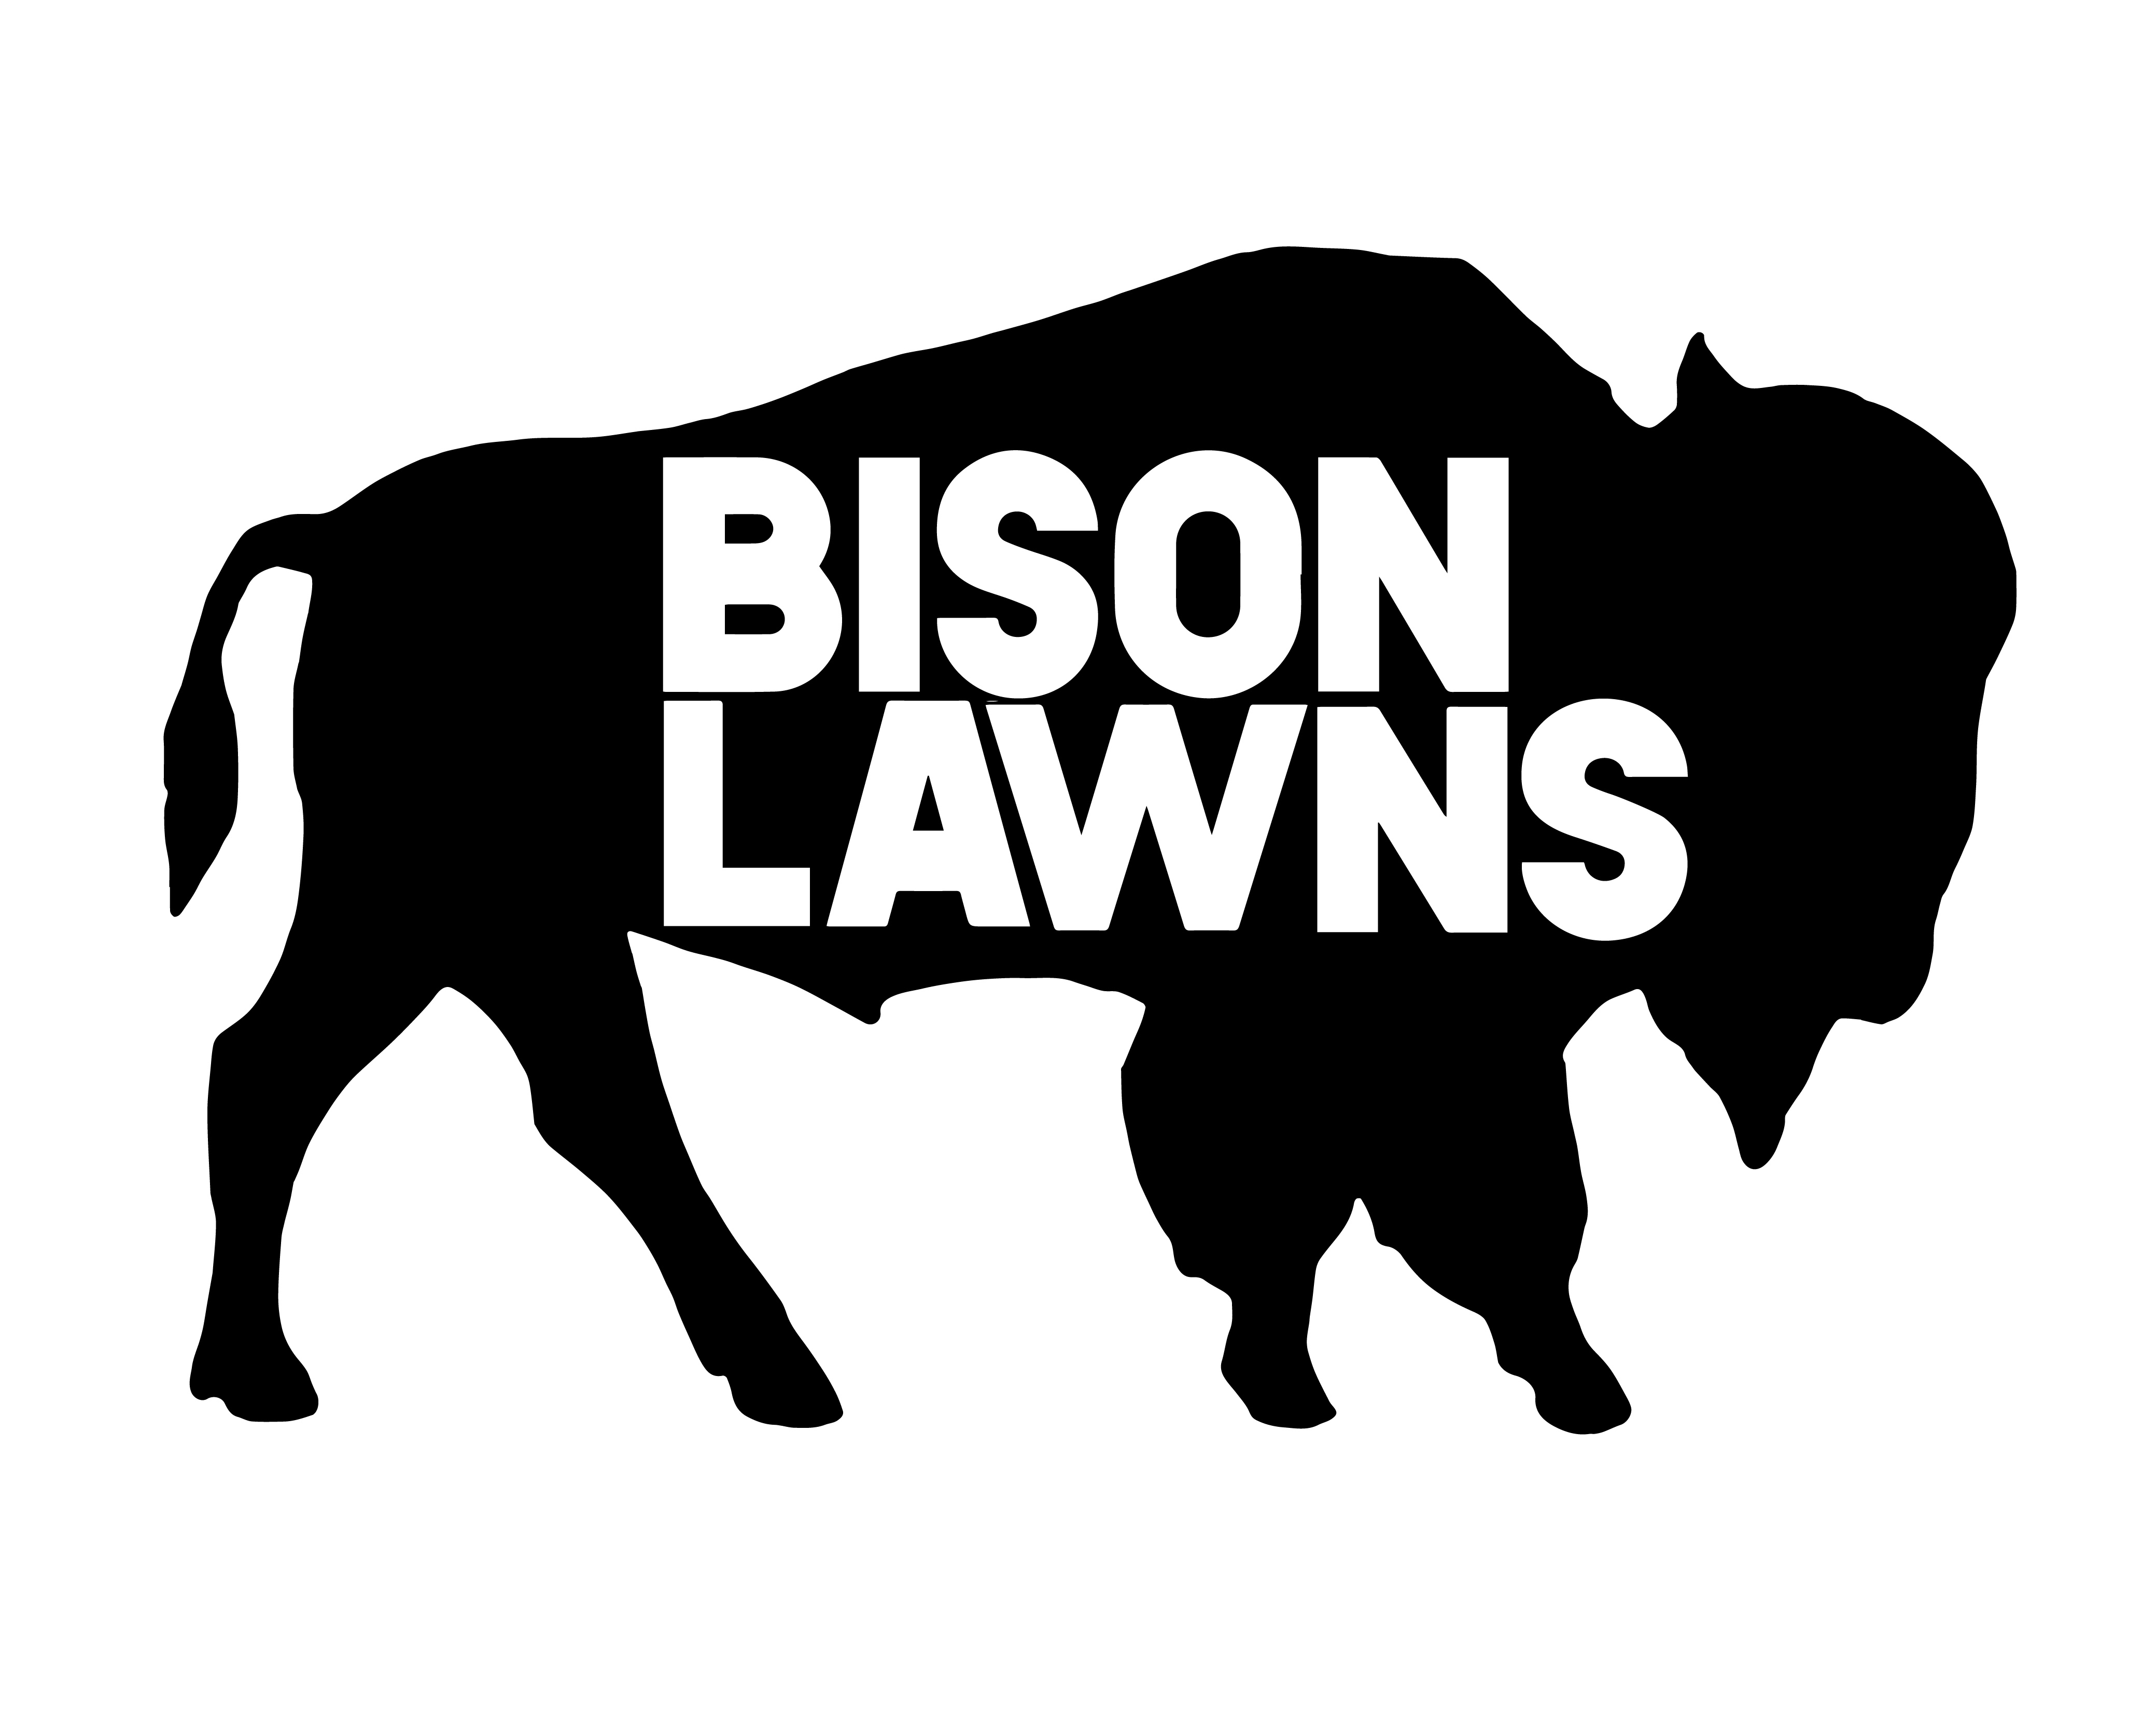 Bison Lawns - Home  Facebook Logo